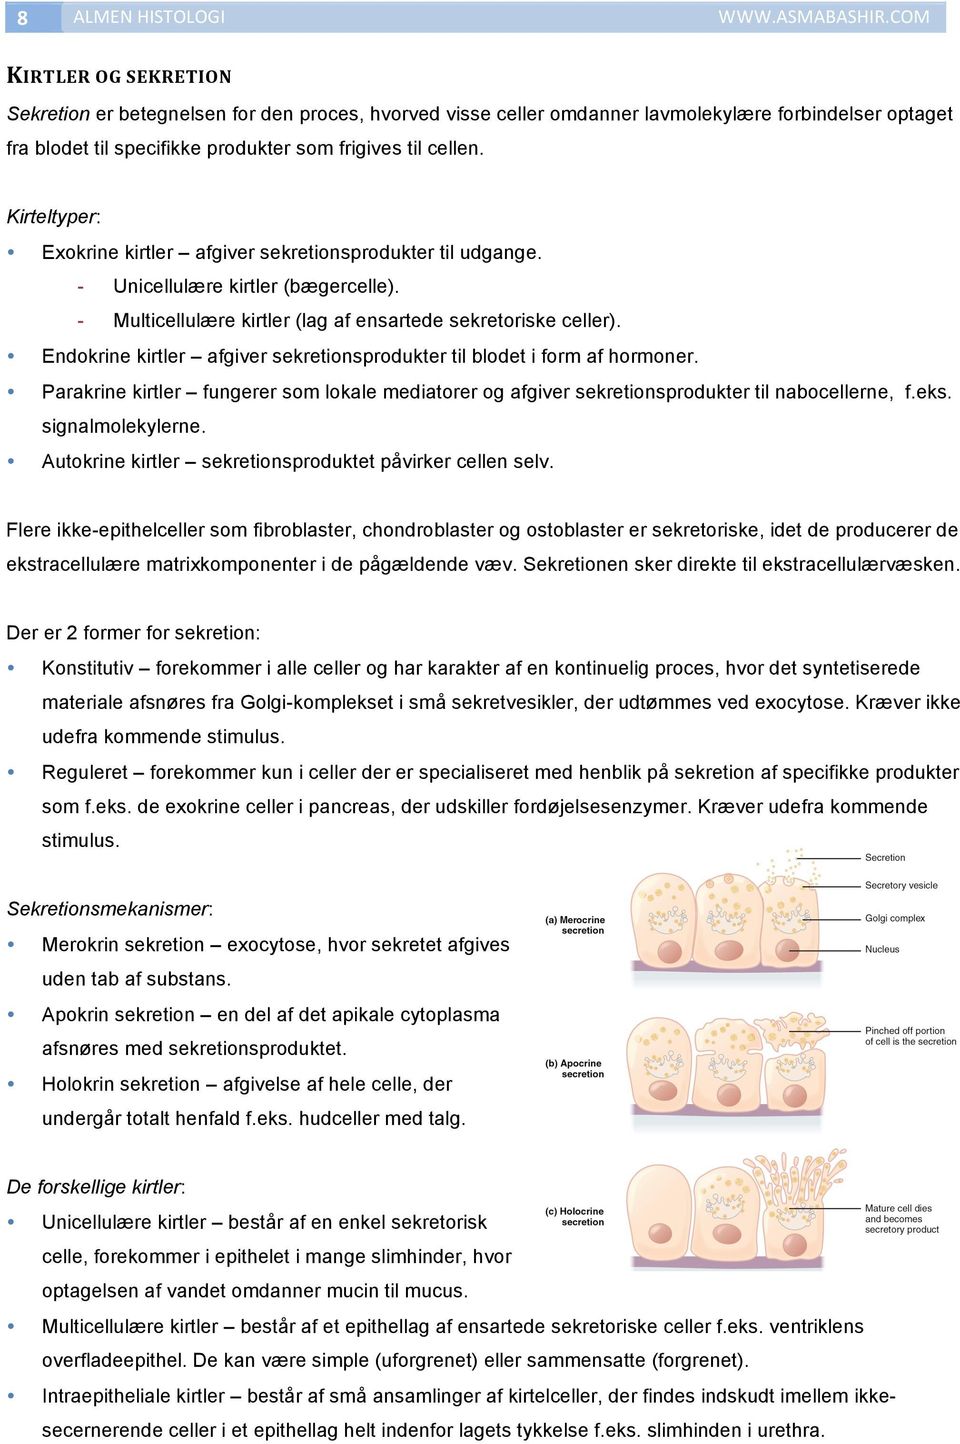 Kirteltyper: Exokrine kirtler afgiver sekretionsprodukter til udgange. - Unicellulære kirtler (bægercelle). - Multicellulære kirtler (lag af ensartede sekretoriske celler).